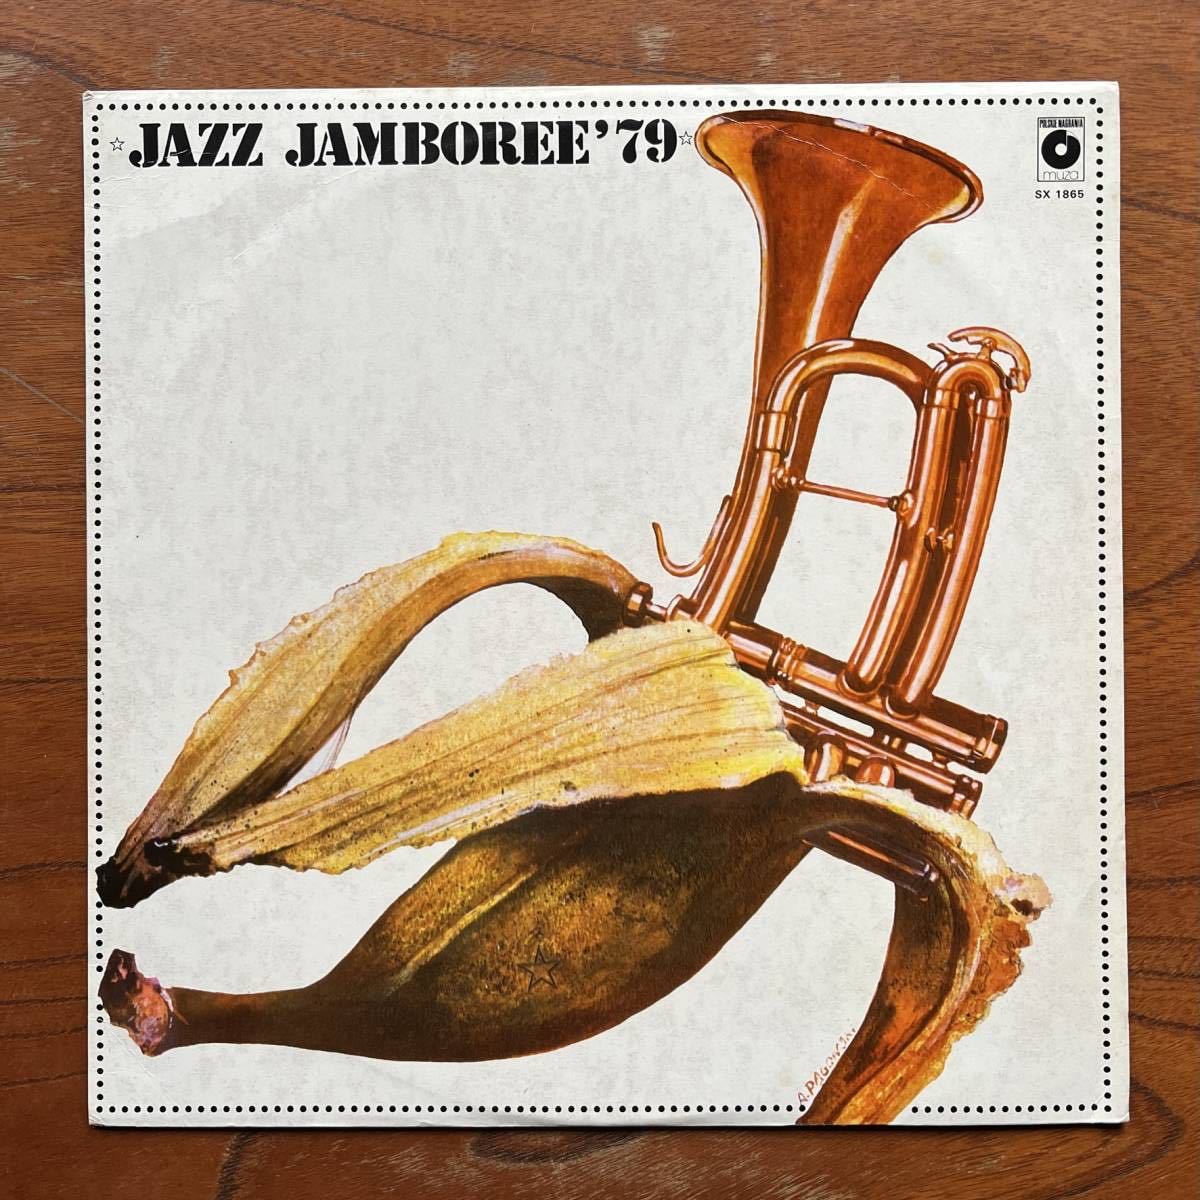 【オリジナル盤 MUZA POLISH JAZZ】JAZZ JAMBOREE '79 - ジャズ・ジャンボリー/SCOTT HAMILTON/GIANNI BASSO/FRANCO D‘ANDREA/EJE THELIN_画像1